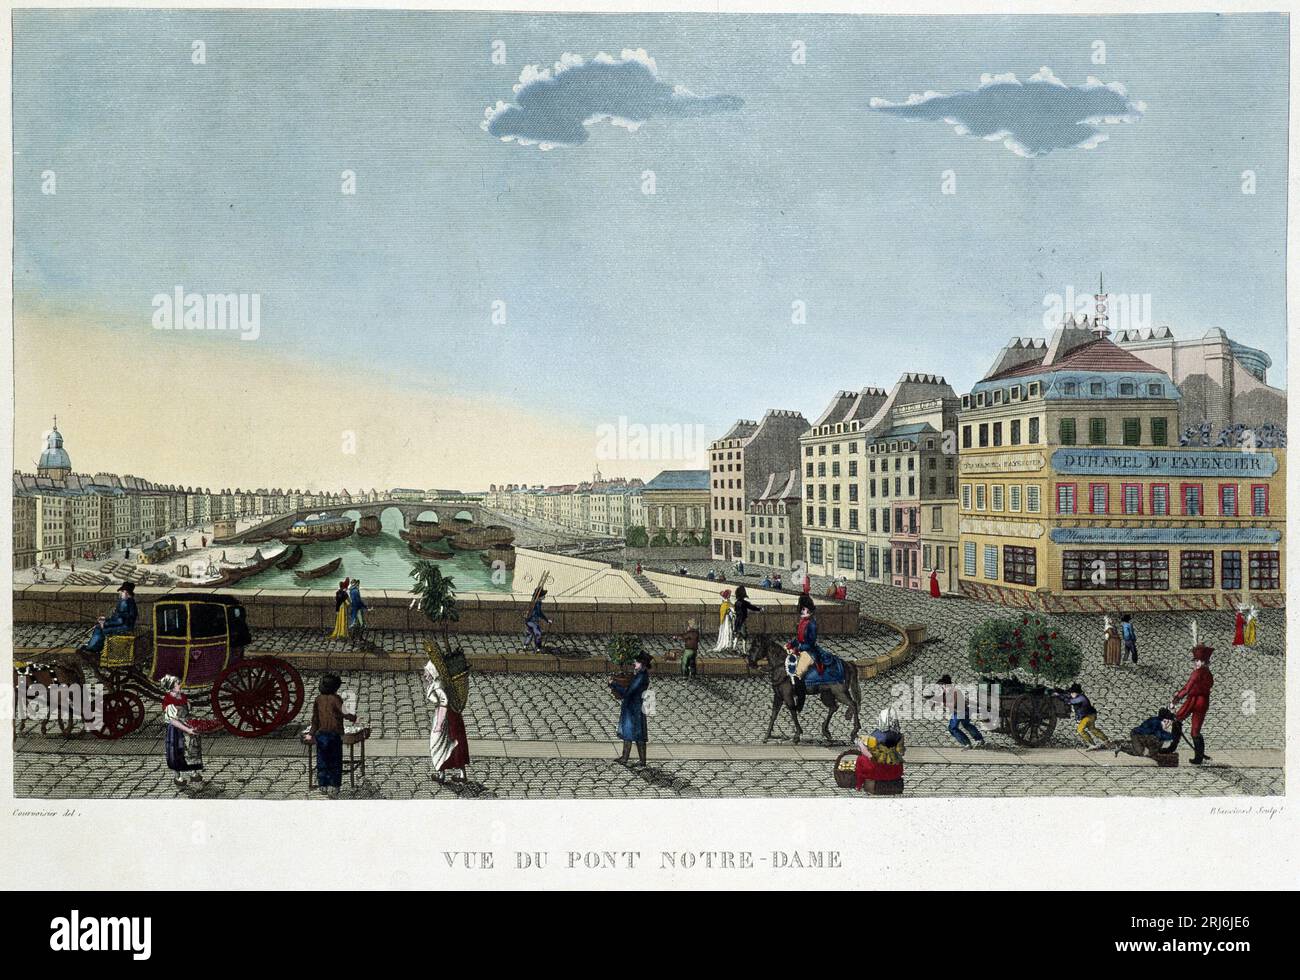 Vue du pont Notre-Dame - dans 'Vues de Paris' par Courvoisier, 1827 Banque D'Images